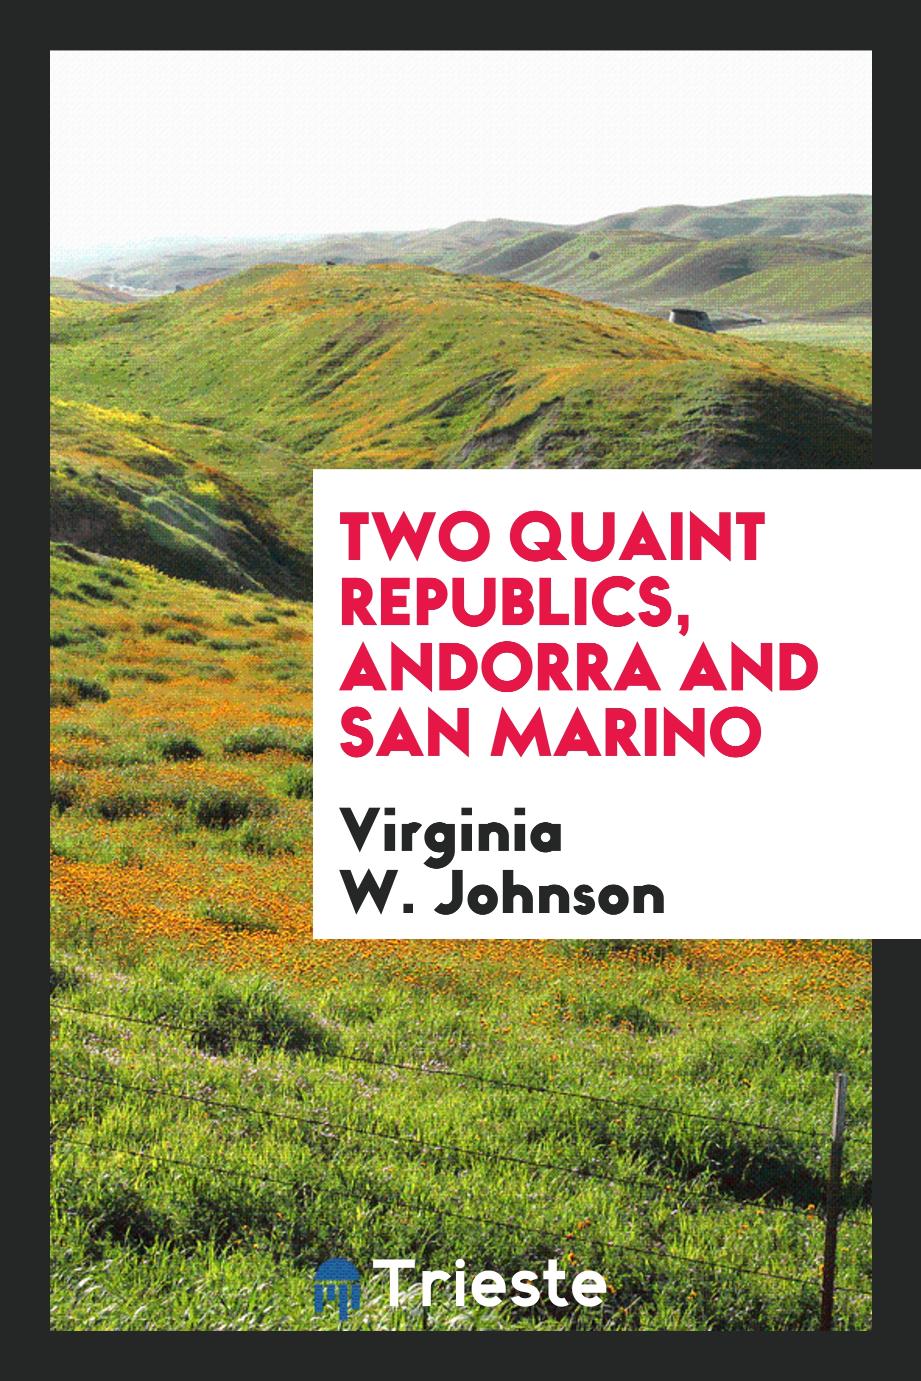 Two quaint republics, Andorra and San Marino